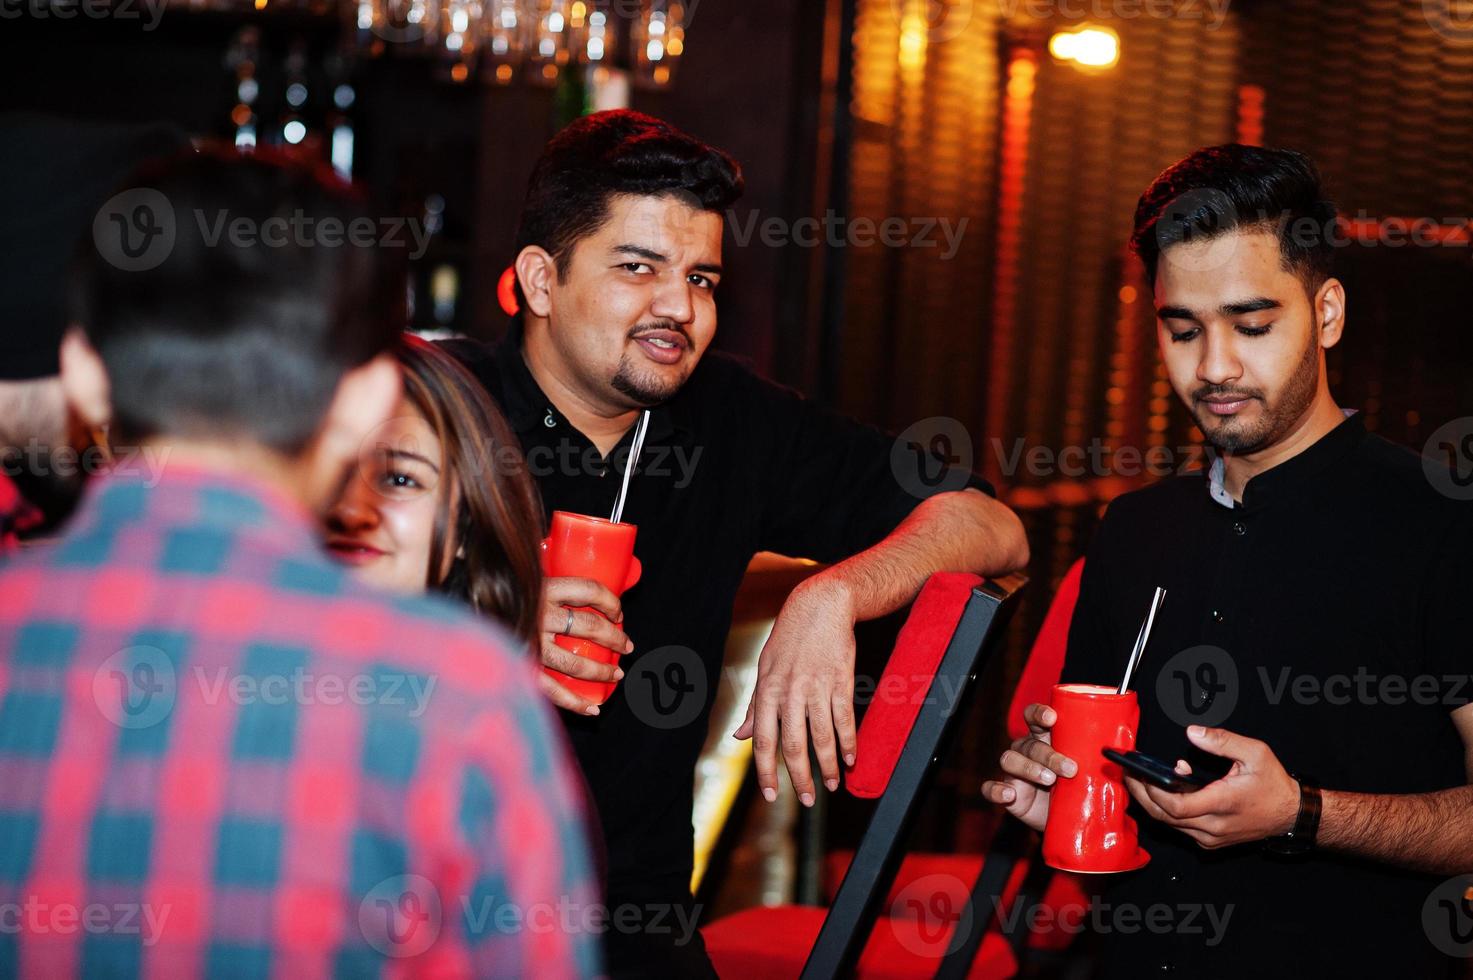 grupp indiska vänner som har kul och vila på nattklubben, dricker cocktails nära bardisken. foto